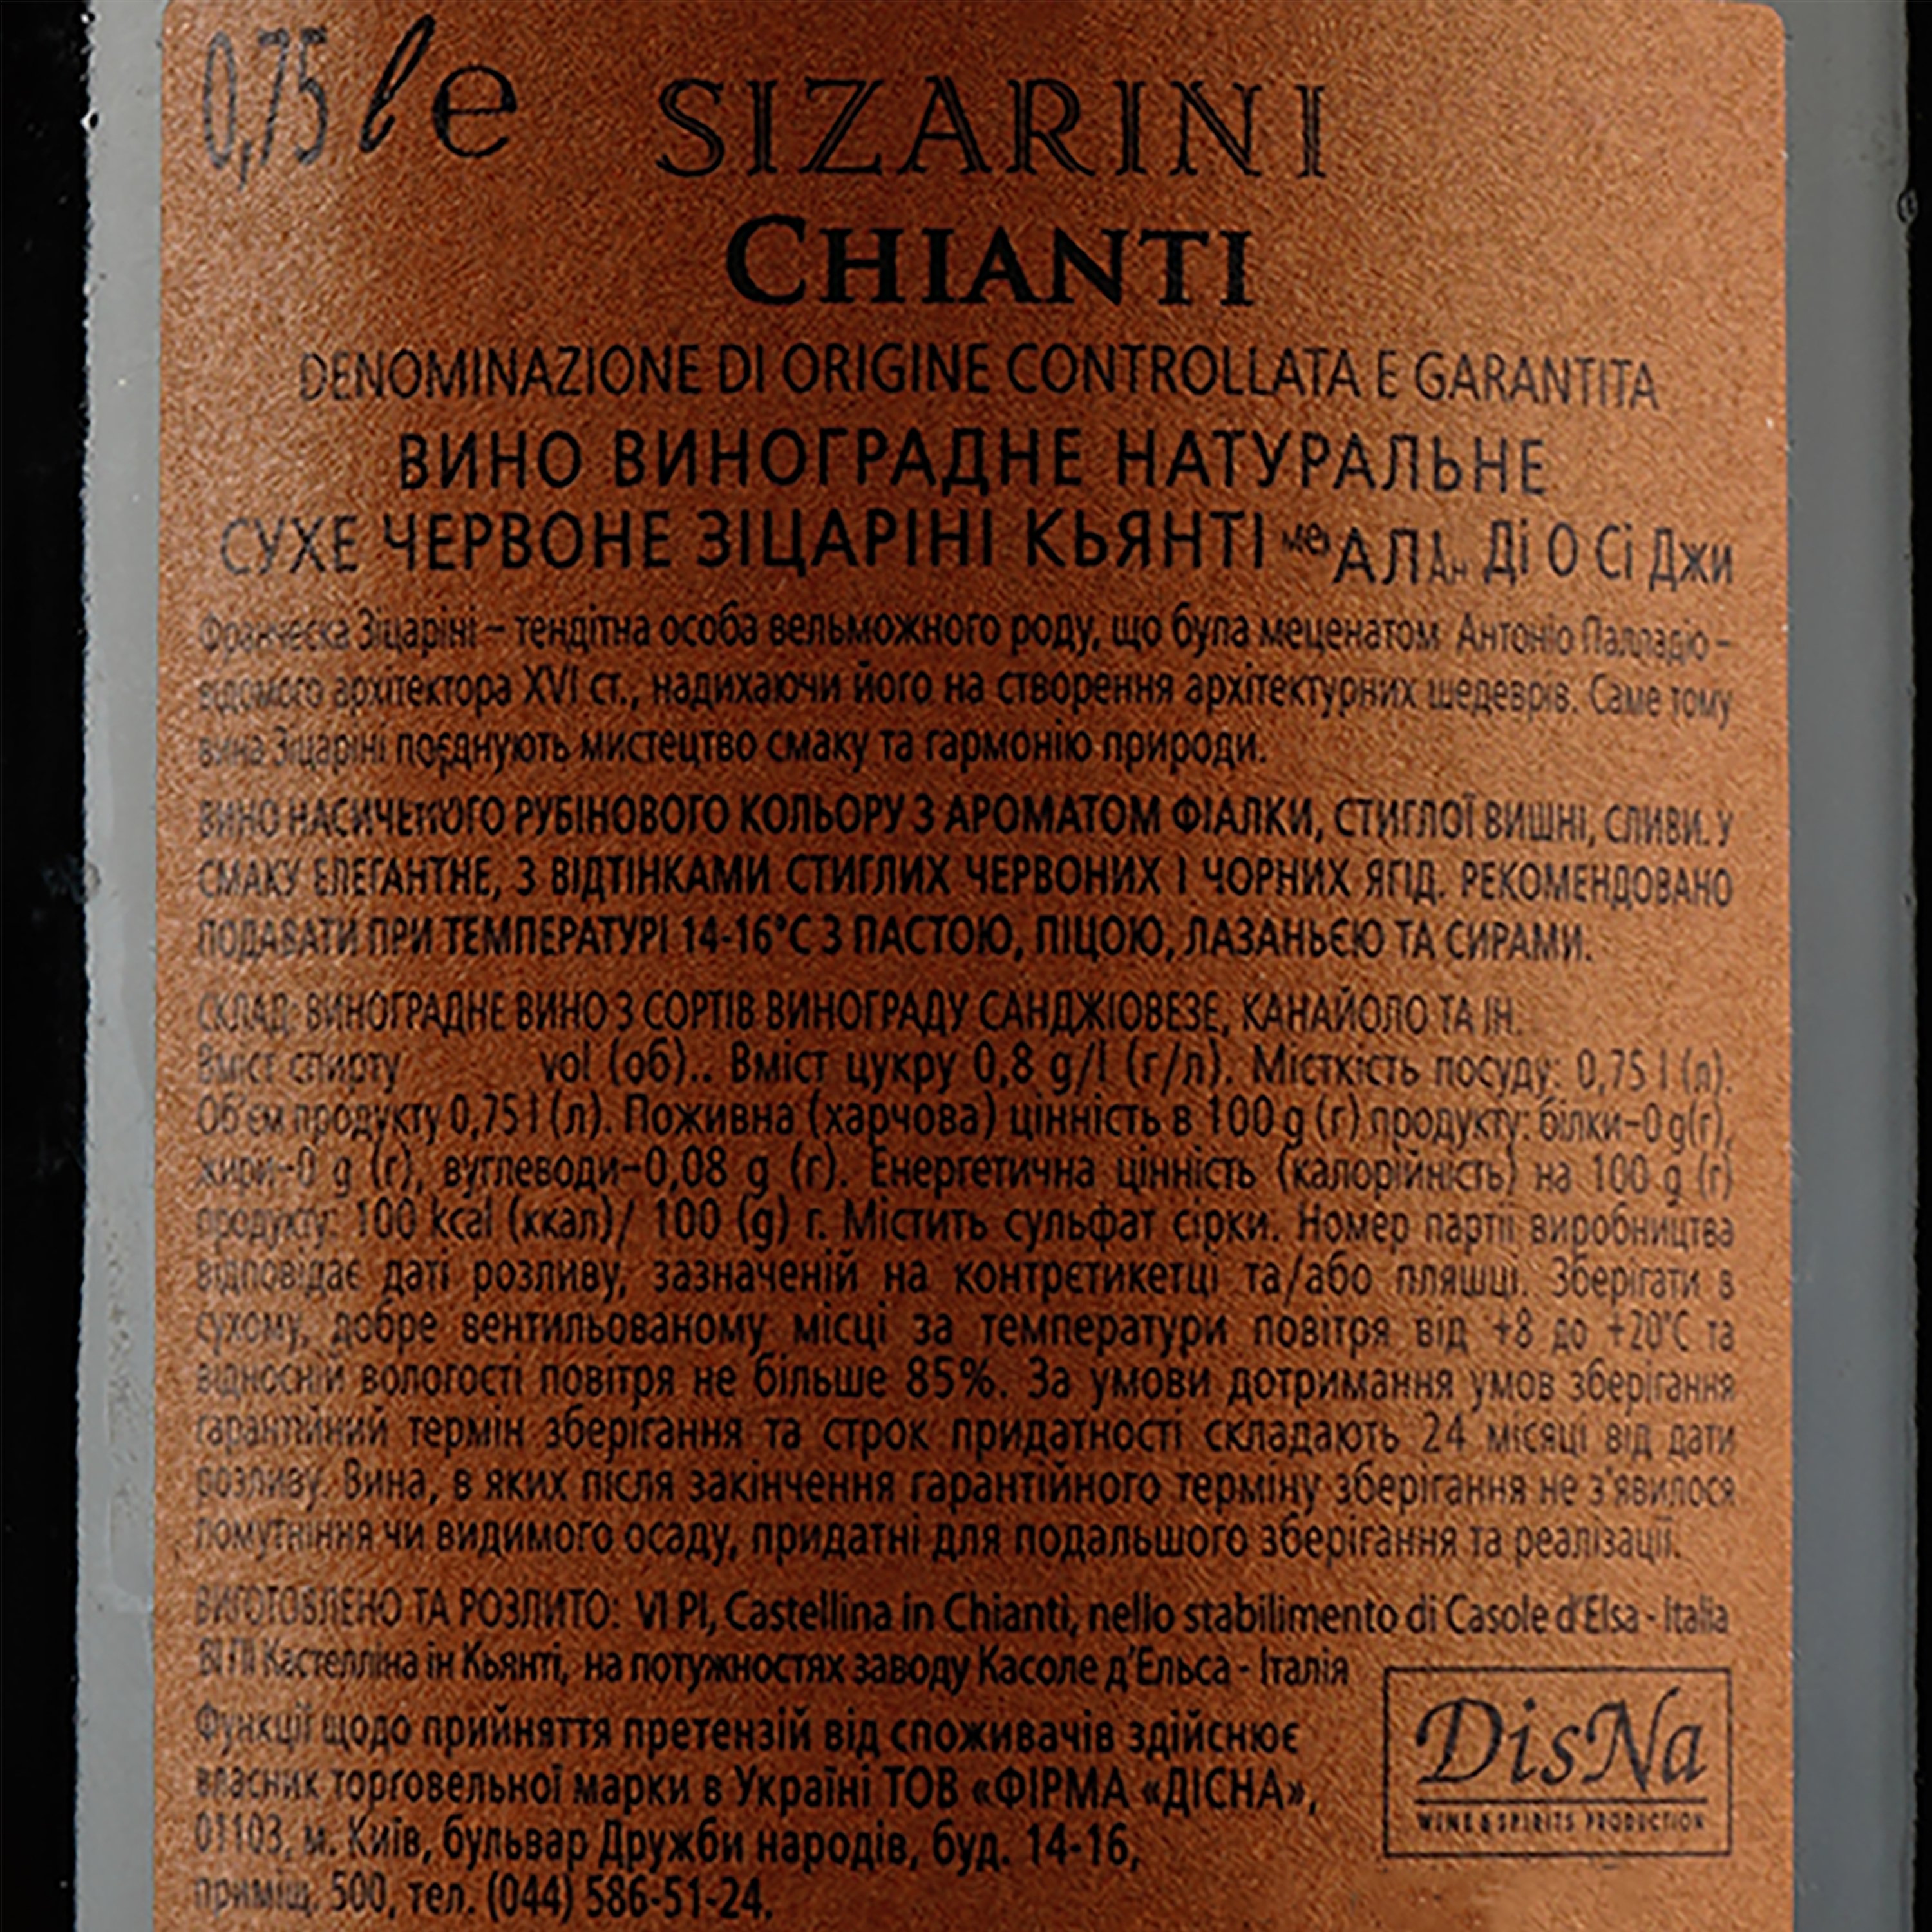 Вино Sizarini Chianti DOCG, красное, сухое, 10%, 0,75 л - фото 3